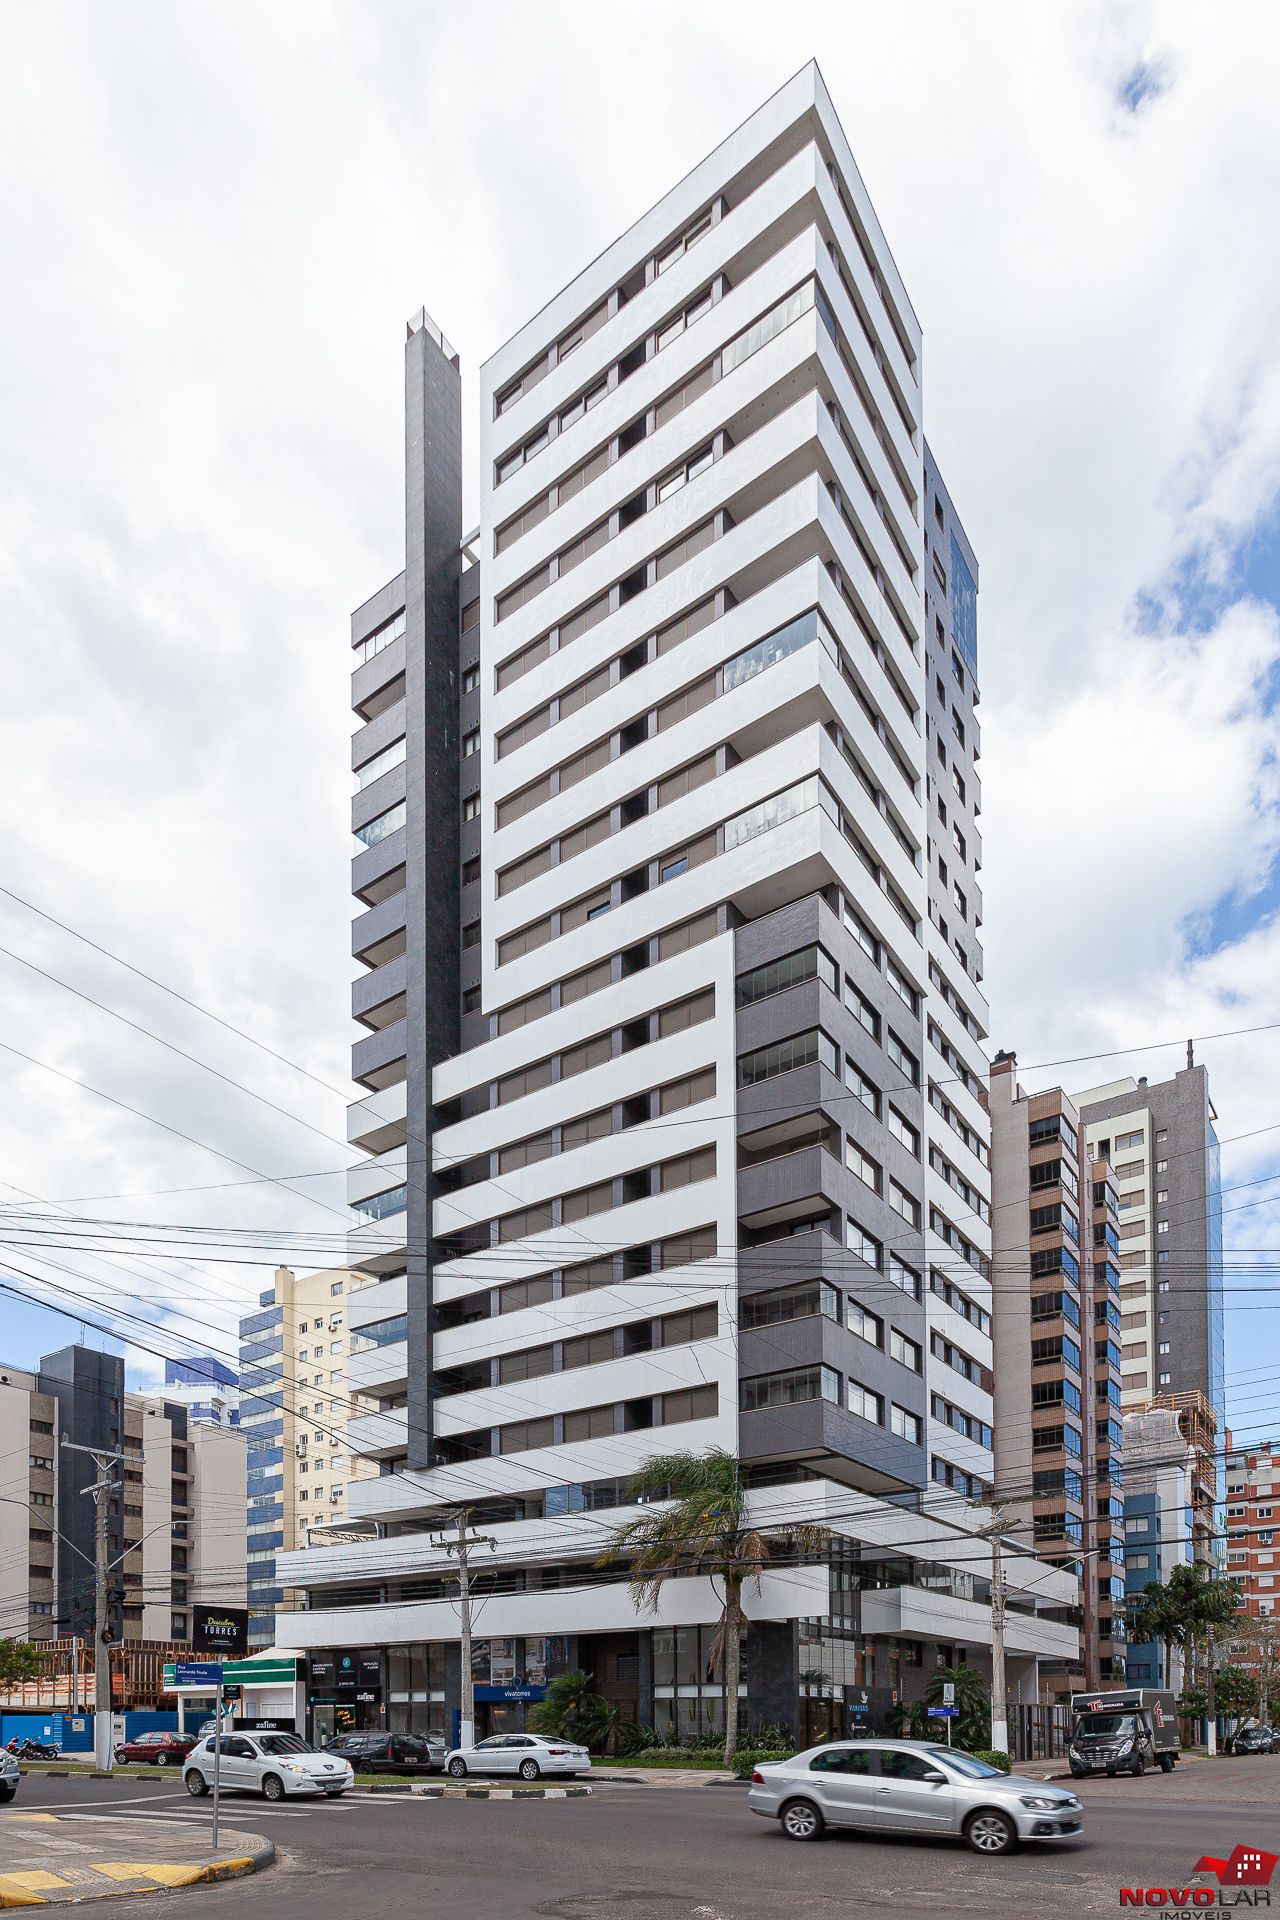 Apartamento com 3 dormitórios em Torres, no bairro Centro à venda